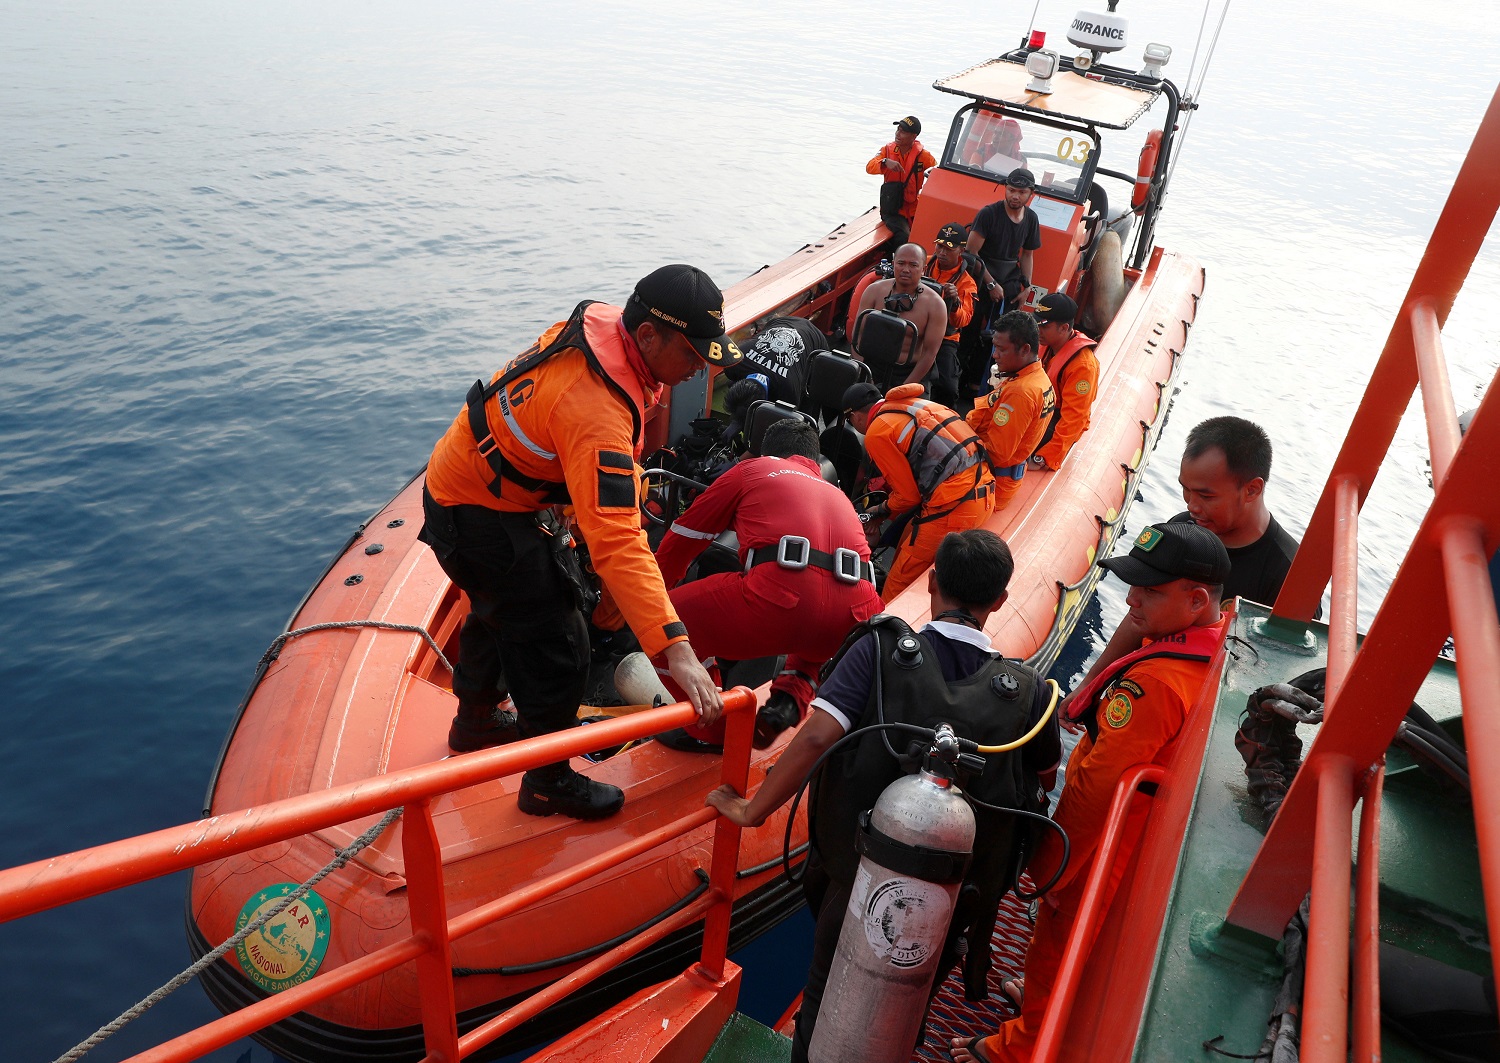 Buzos en Indonesia continúan búsqueda de cabina del avión accidentado entre fuertes corrientes (Fotos)